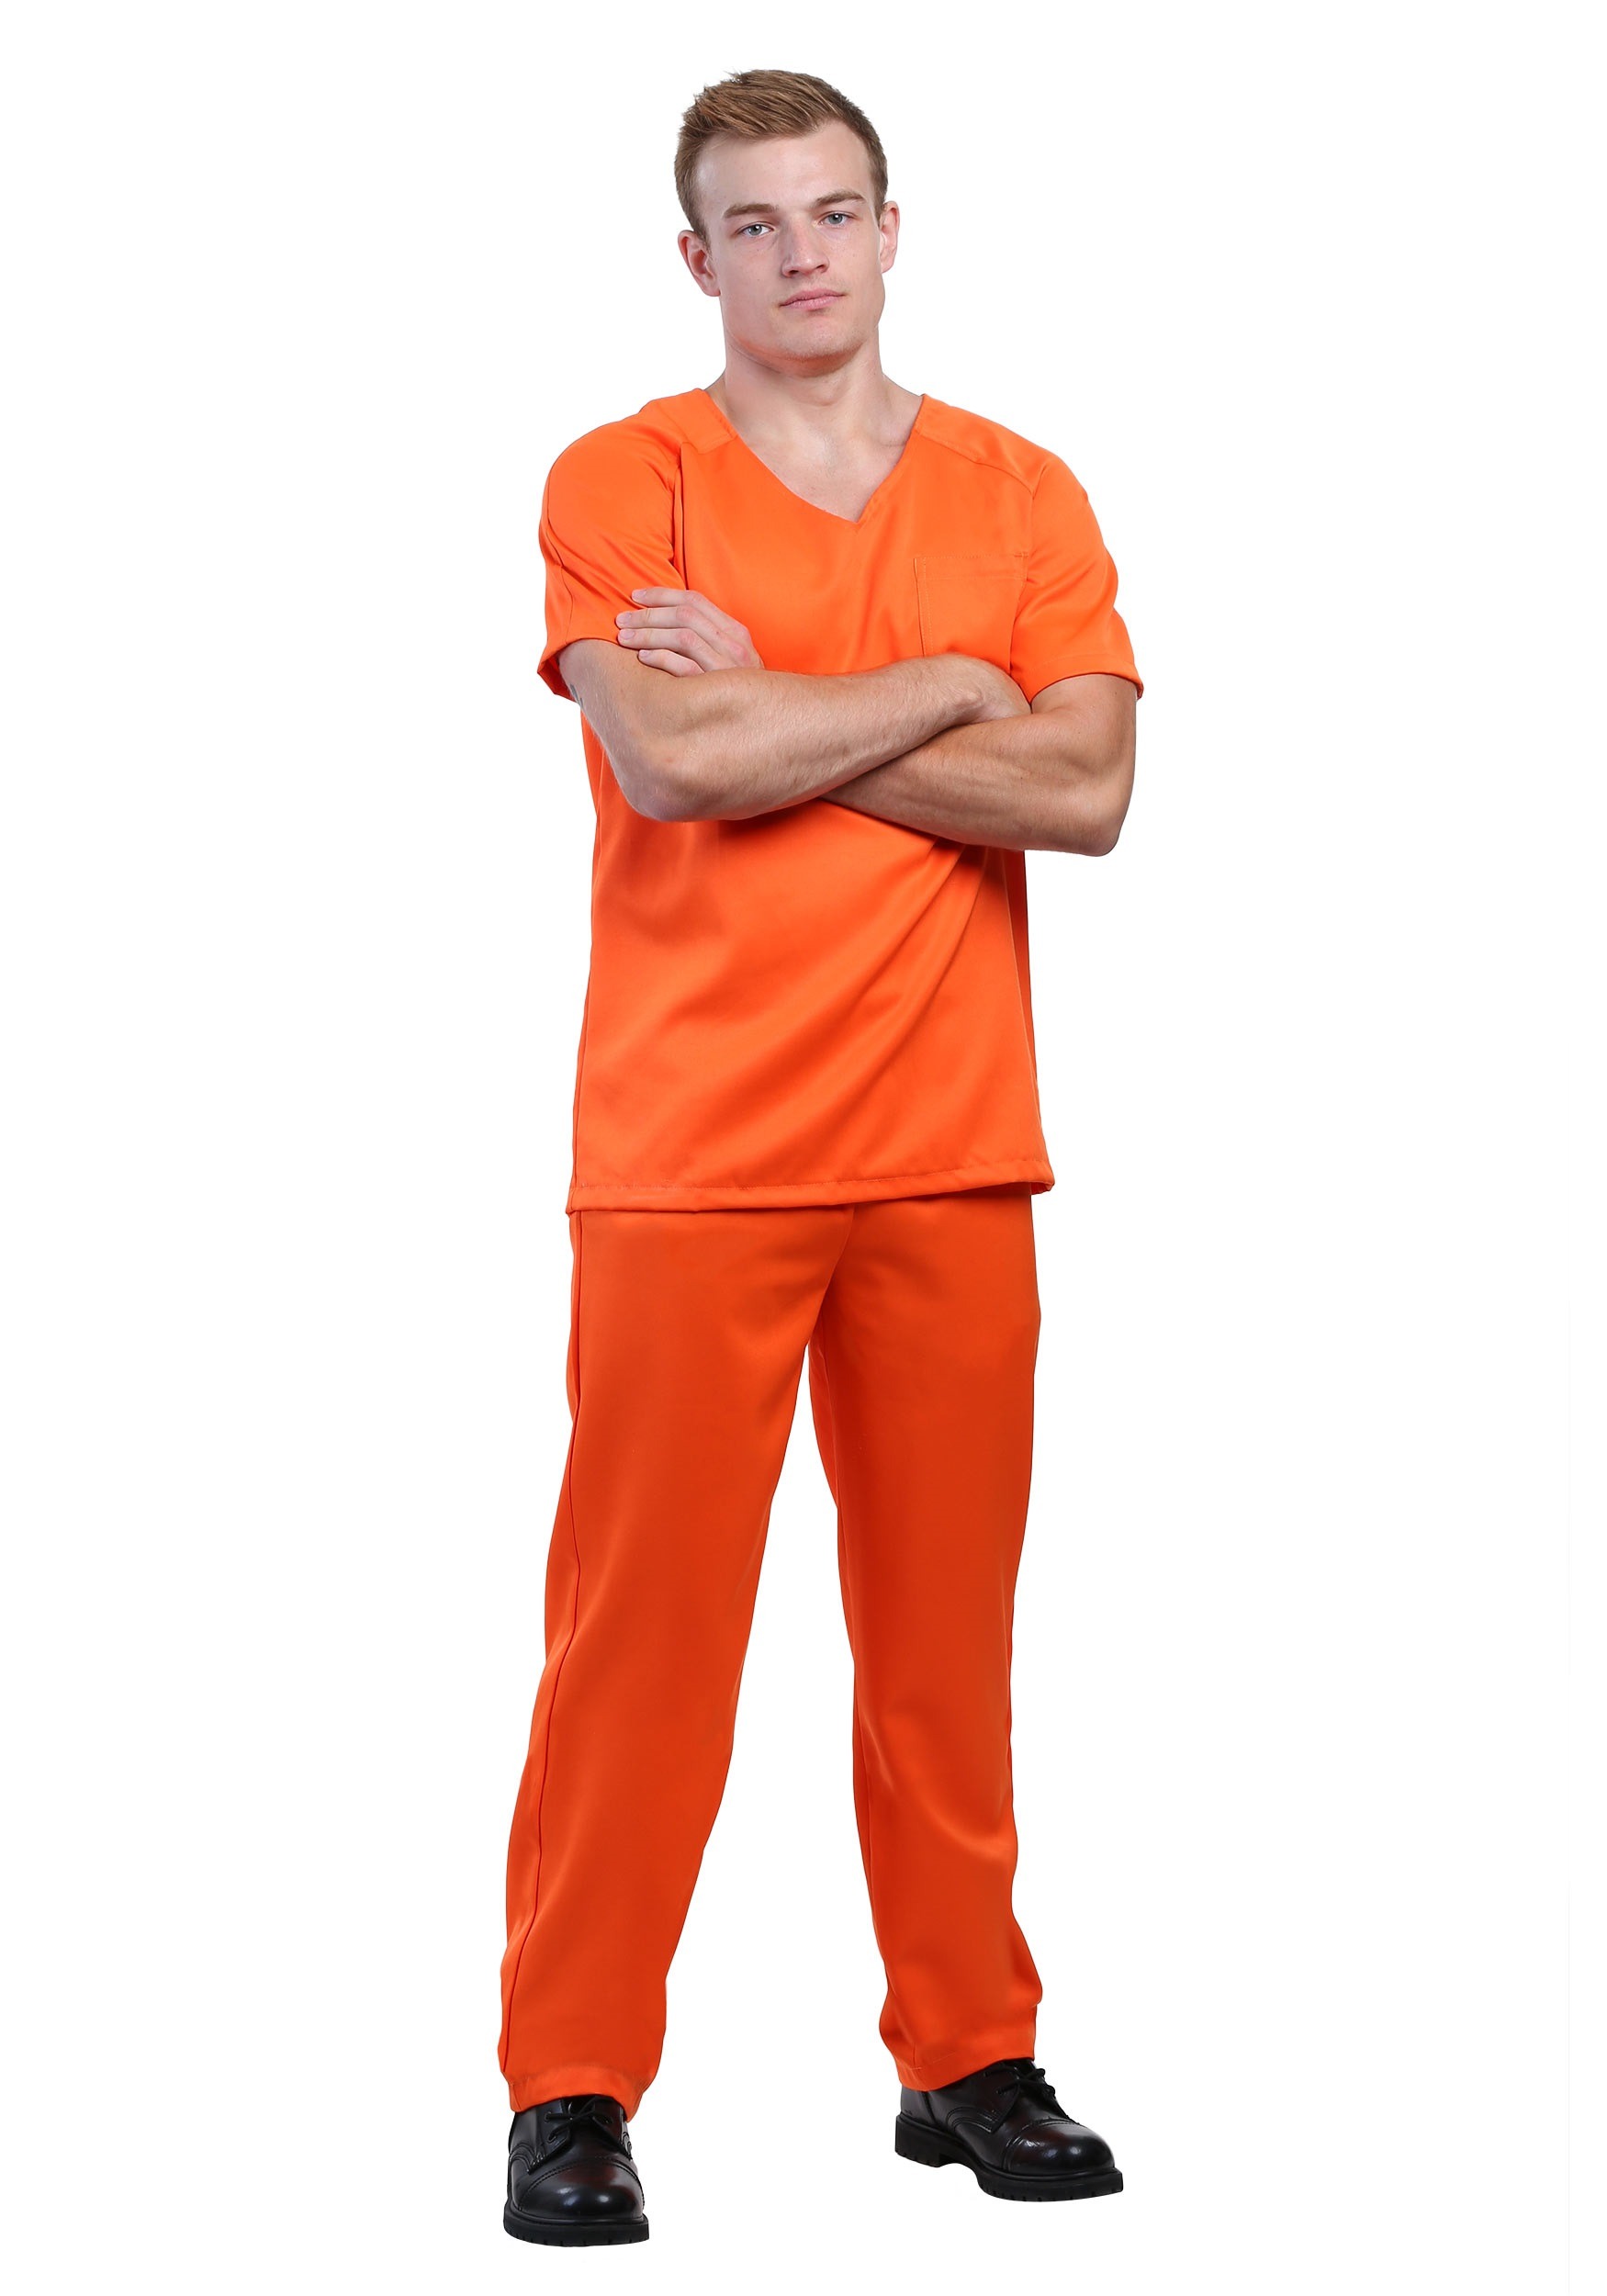 https://images.halloweencostumes.com.mx/products/40189/1-1/disfraz-de-prisionero-naranja-para-hombre.jpg